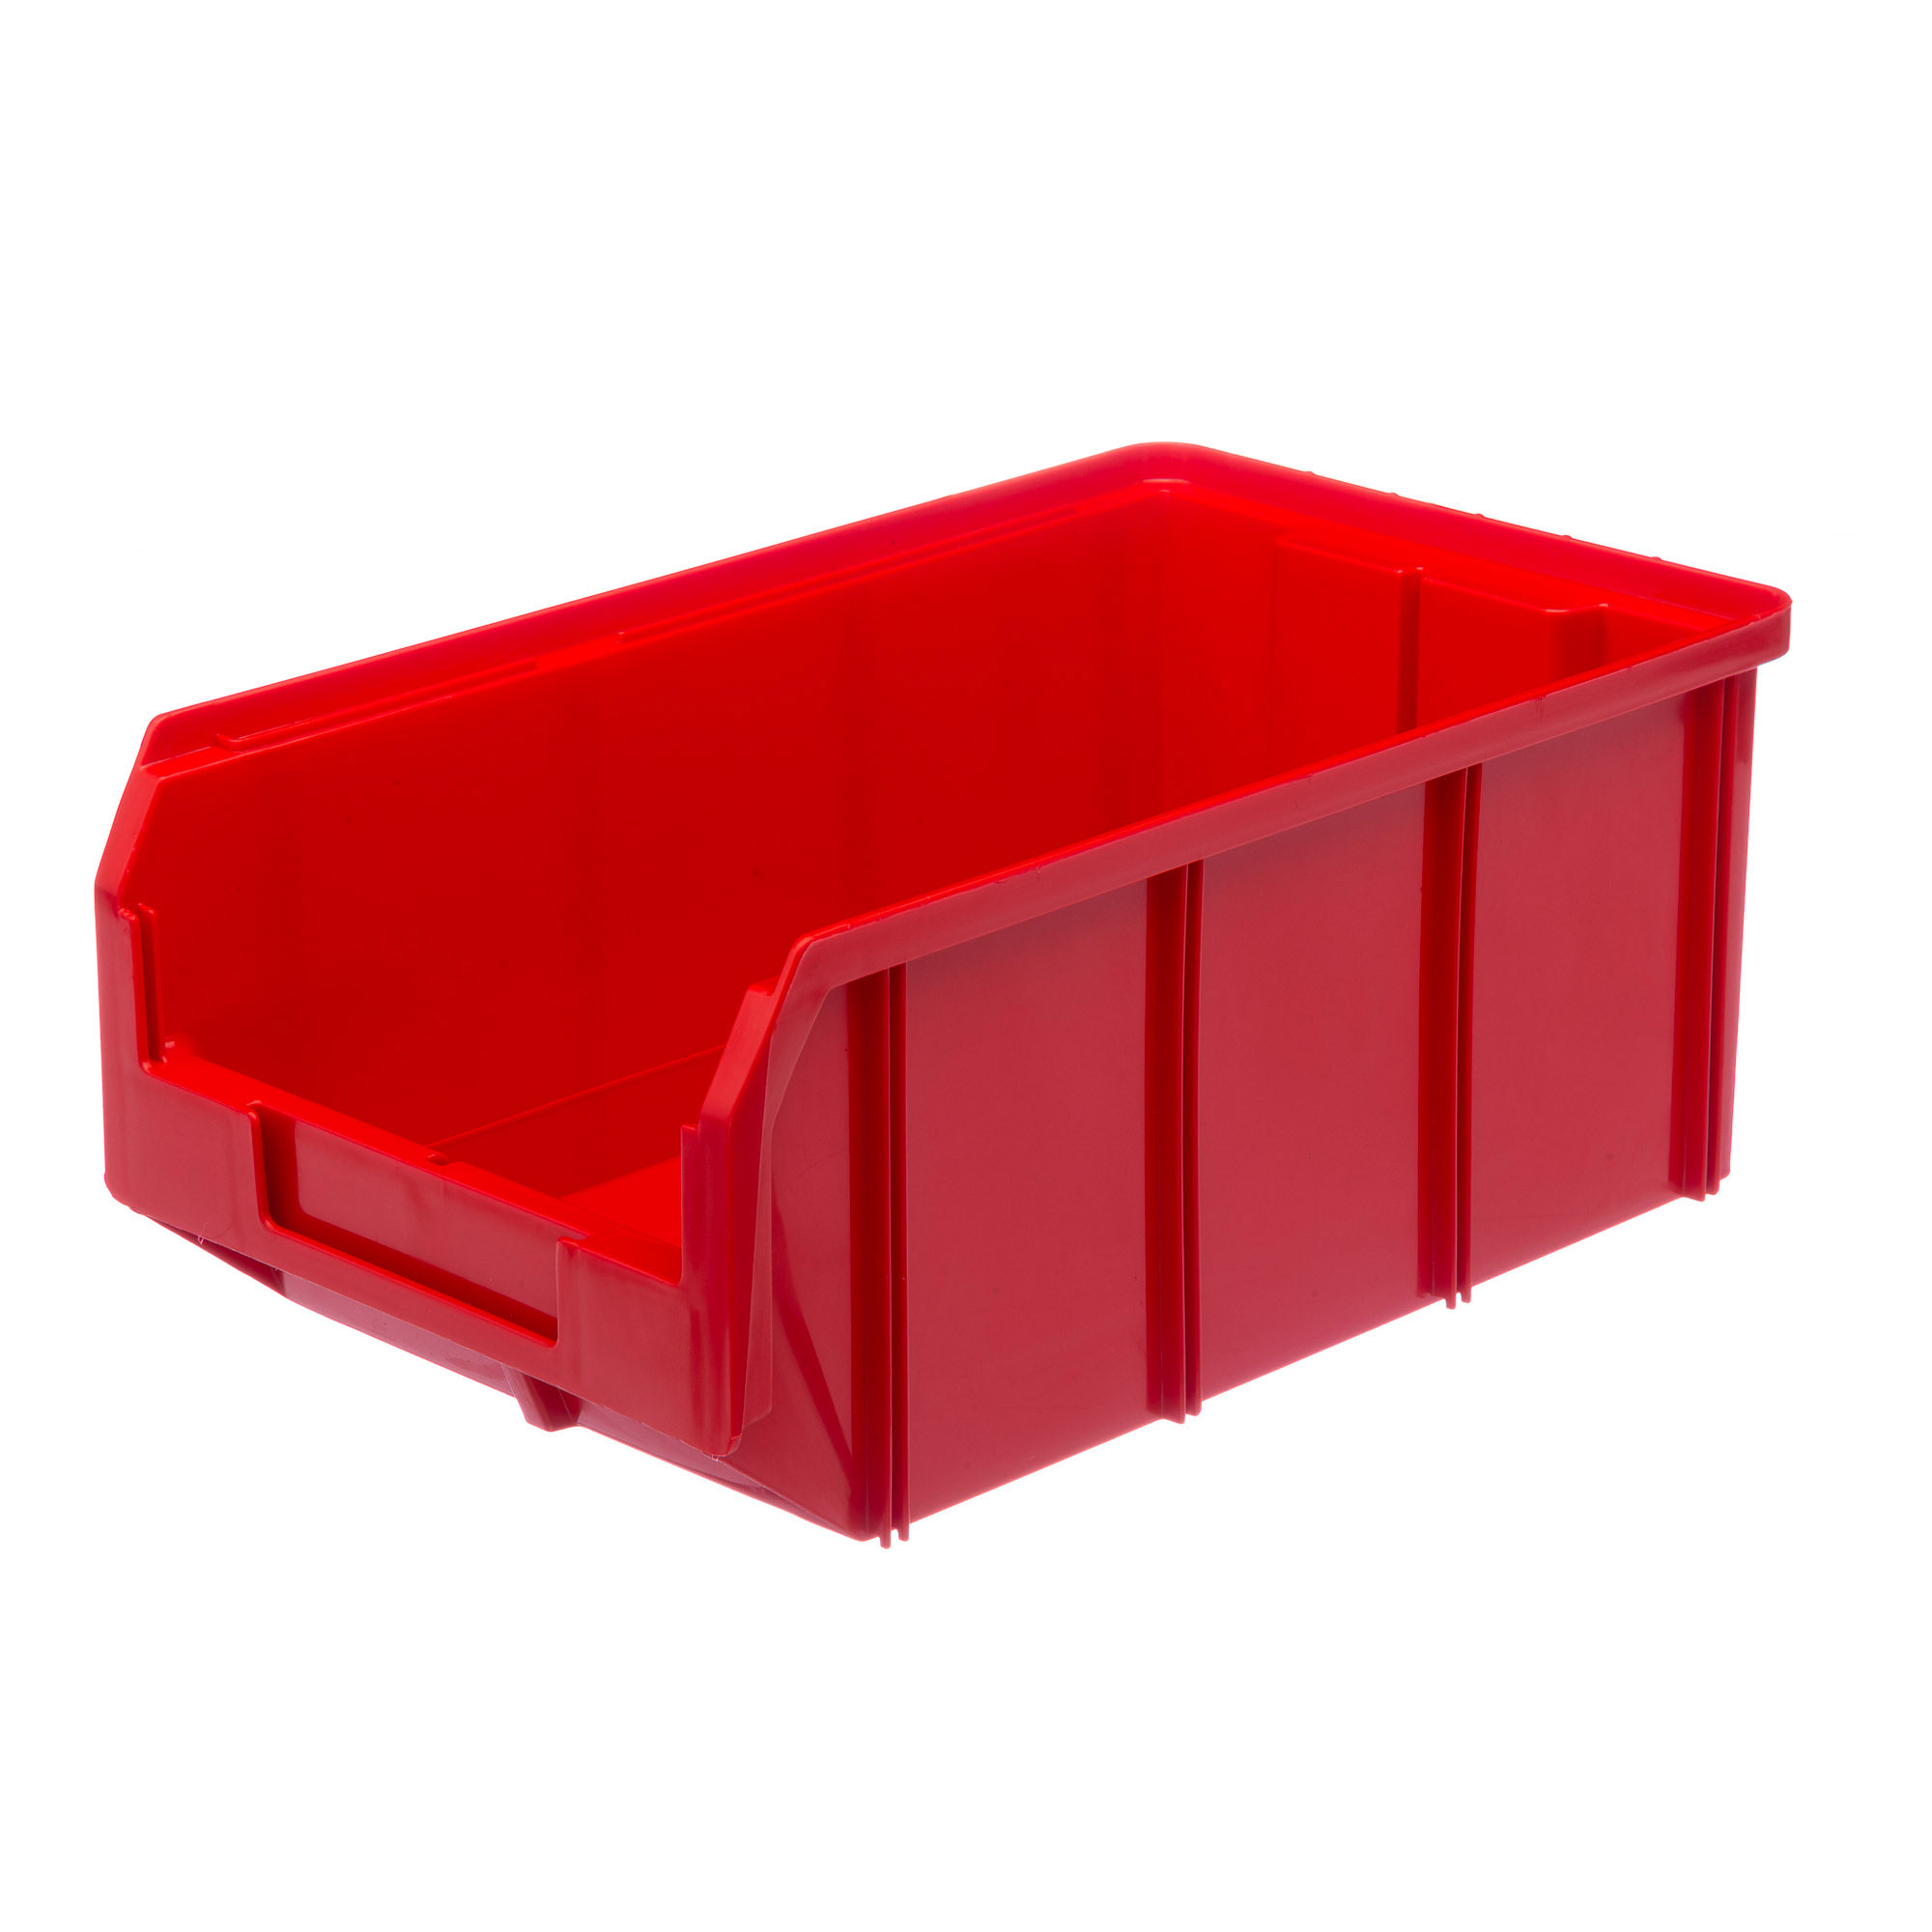 Пластиковый ящик Стелла-техник V-3-красный 342х207x143мм, 9,4 литра пластиковый короб стелла техник c 2 к6 зеленый прозрачный 140х250х100мм комплект 6 штук